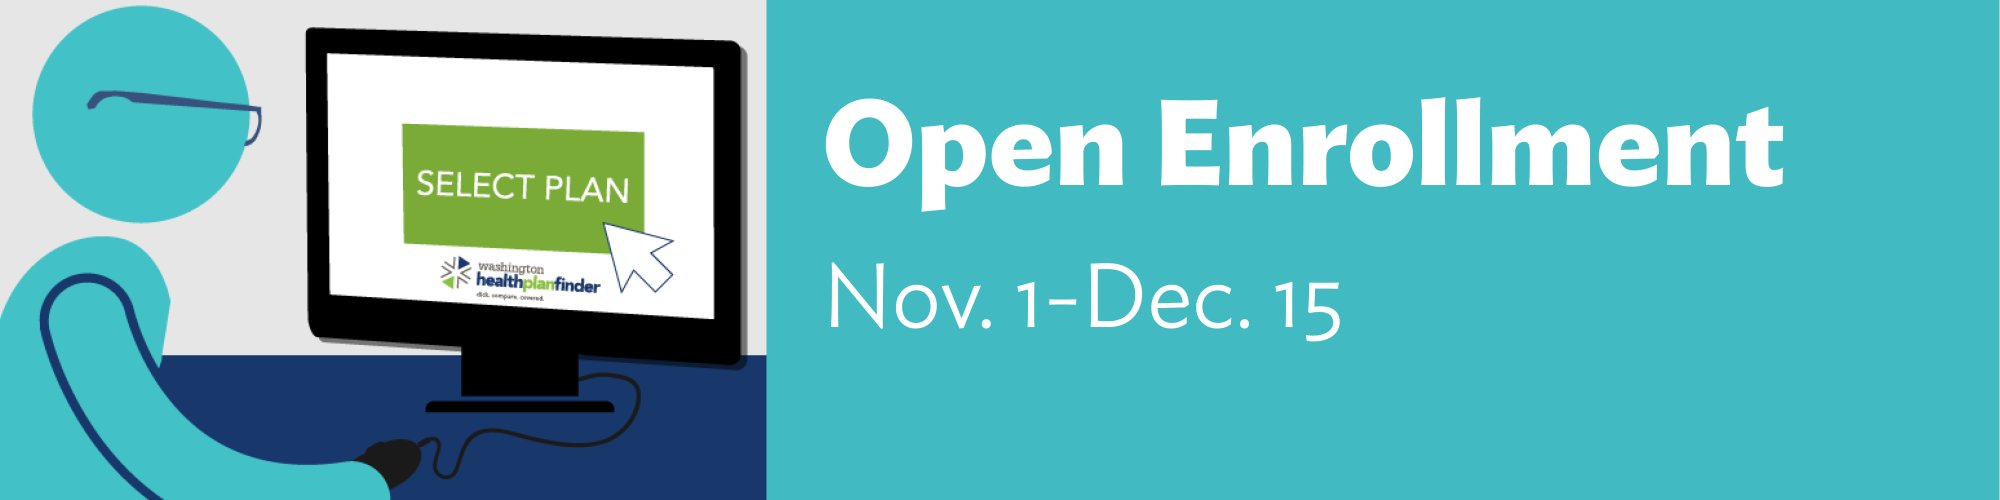 Open enrollment Nov. 1-Dec. 15